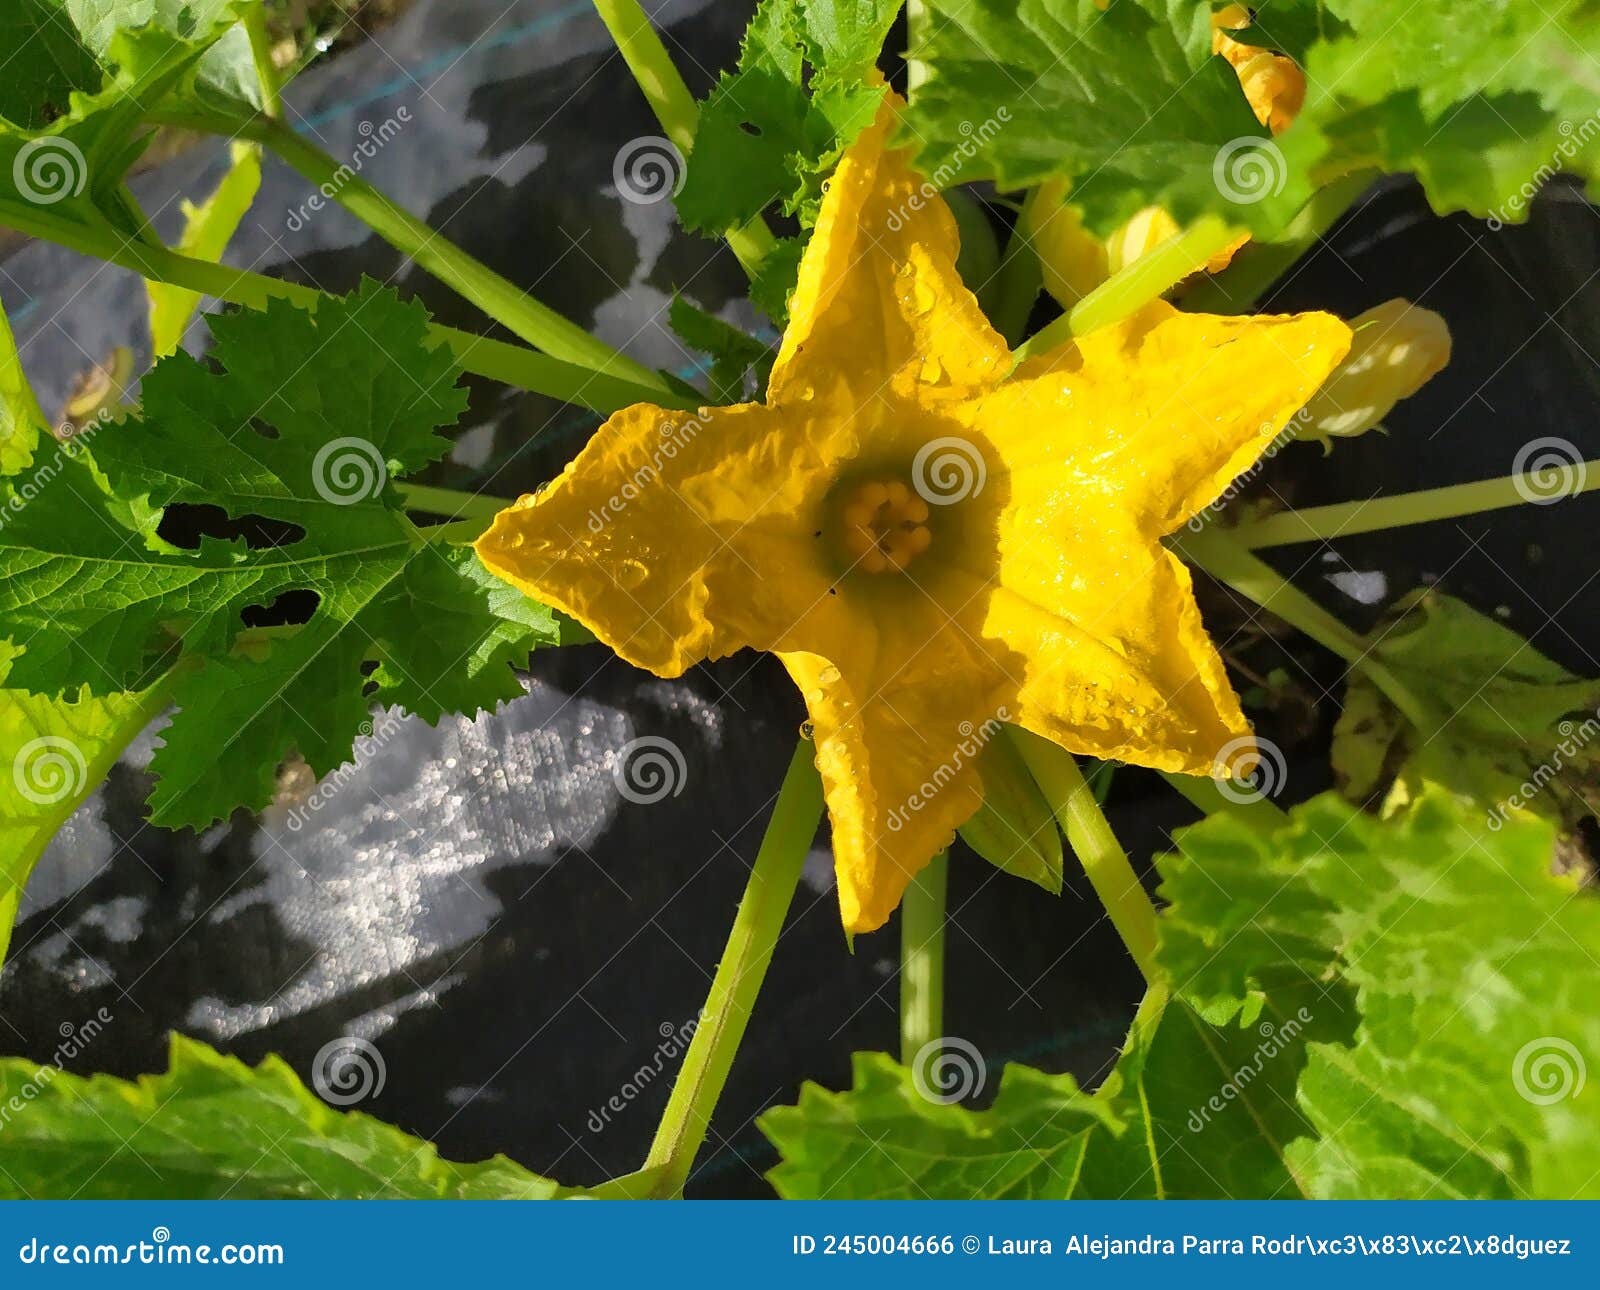 a pumpkin flower with an intense yellow color in a vegetable patch. flor de calabaza con un intenso color amarillo en un huerto.